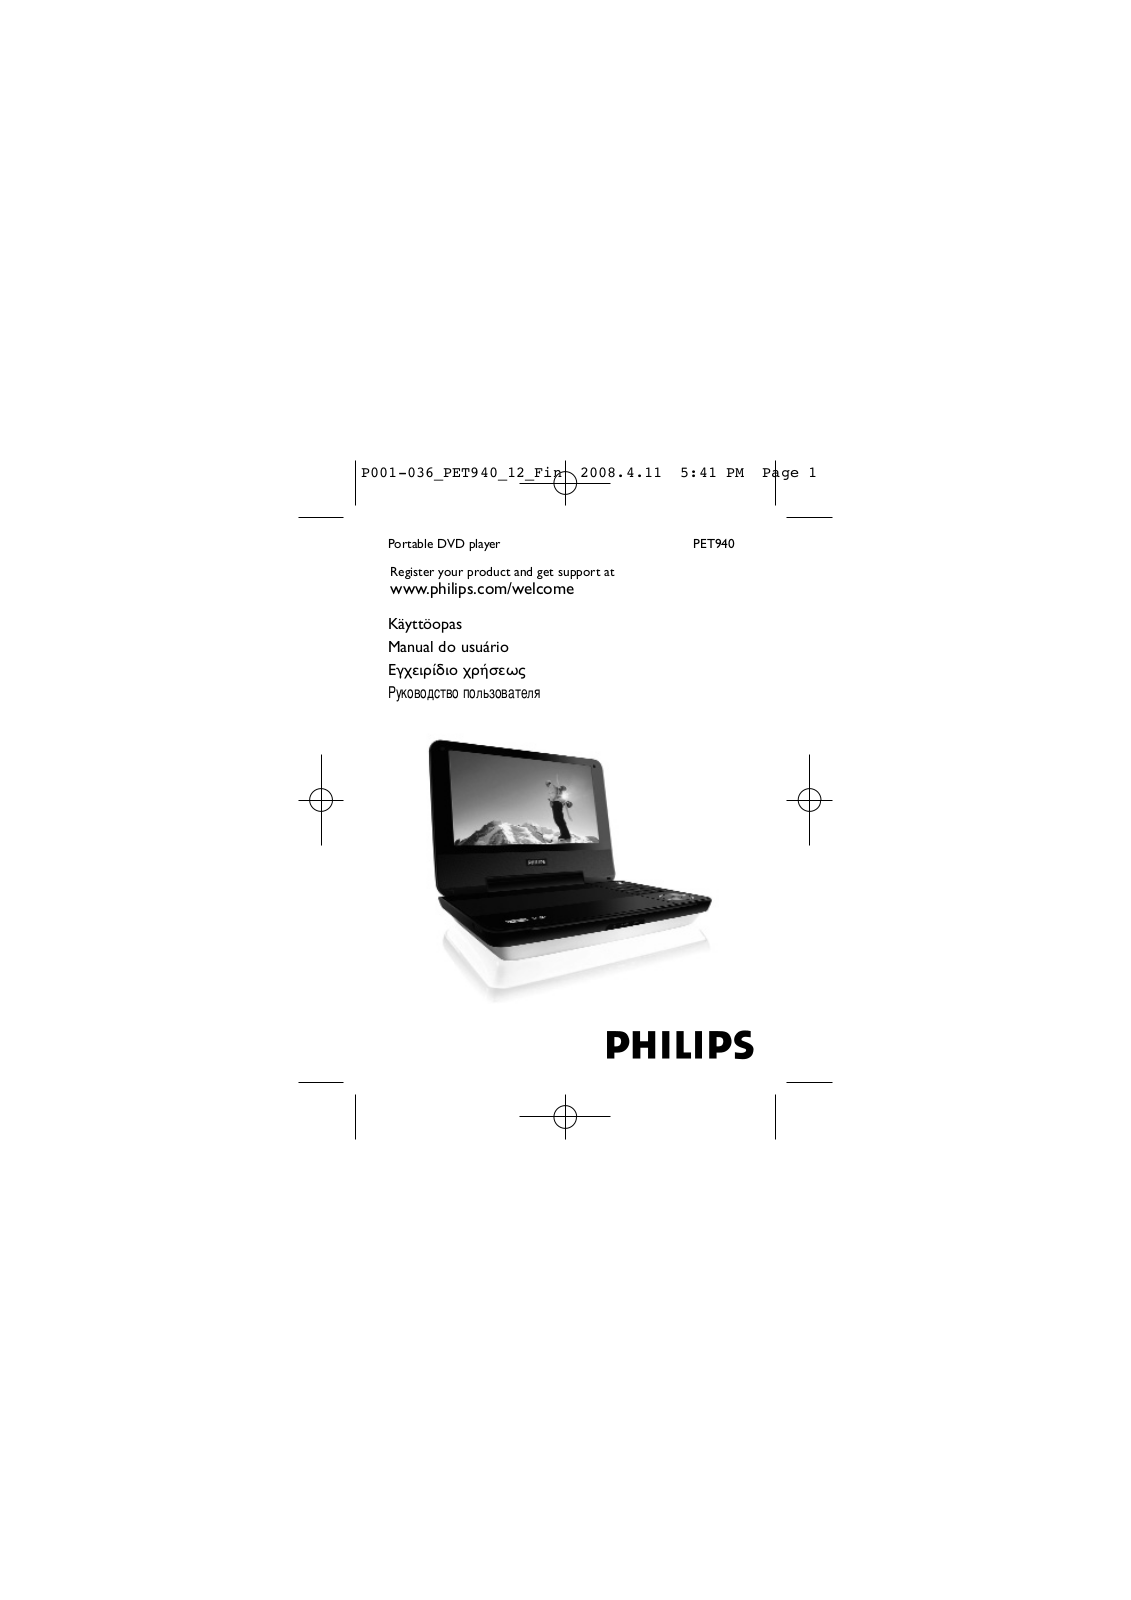 PHILIPS PET940 User Manual